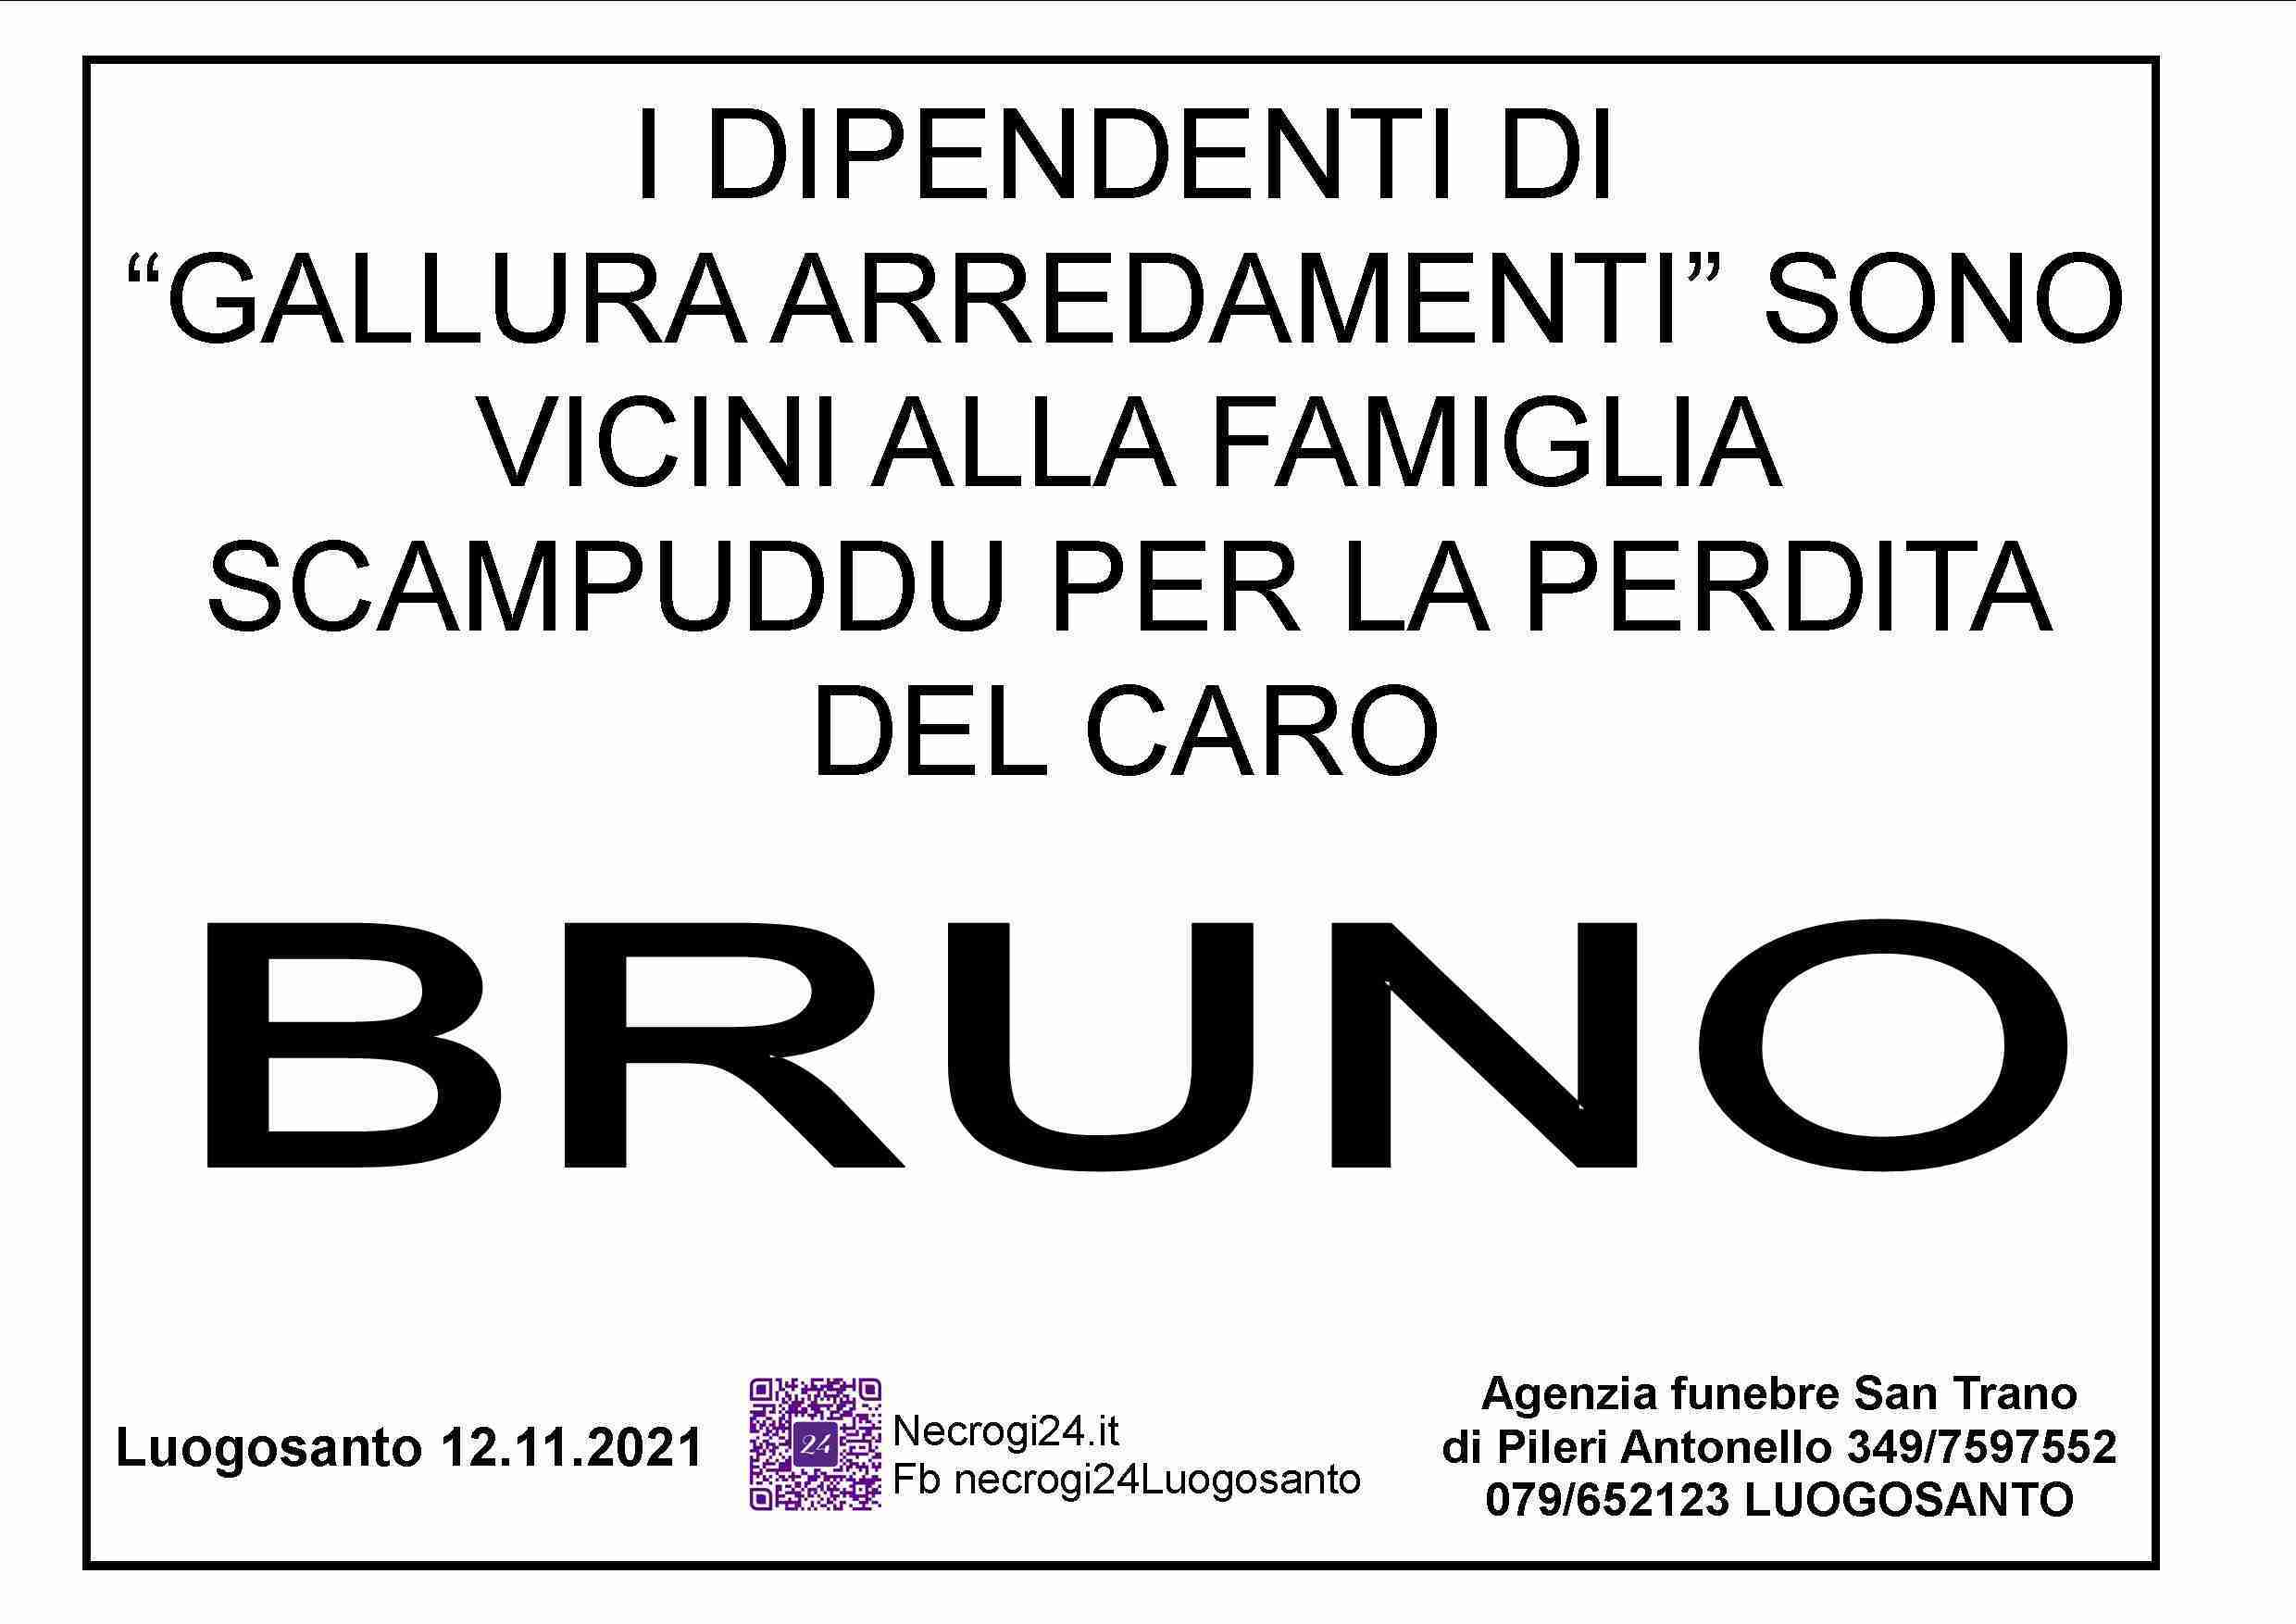 Bruno Scampuddu